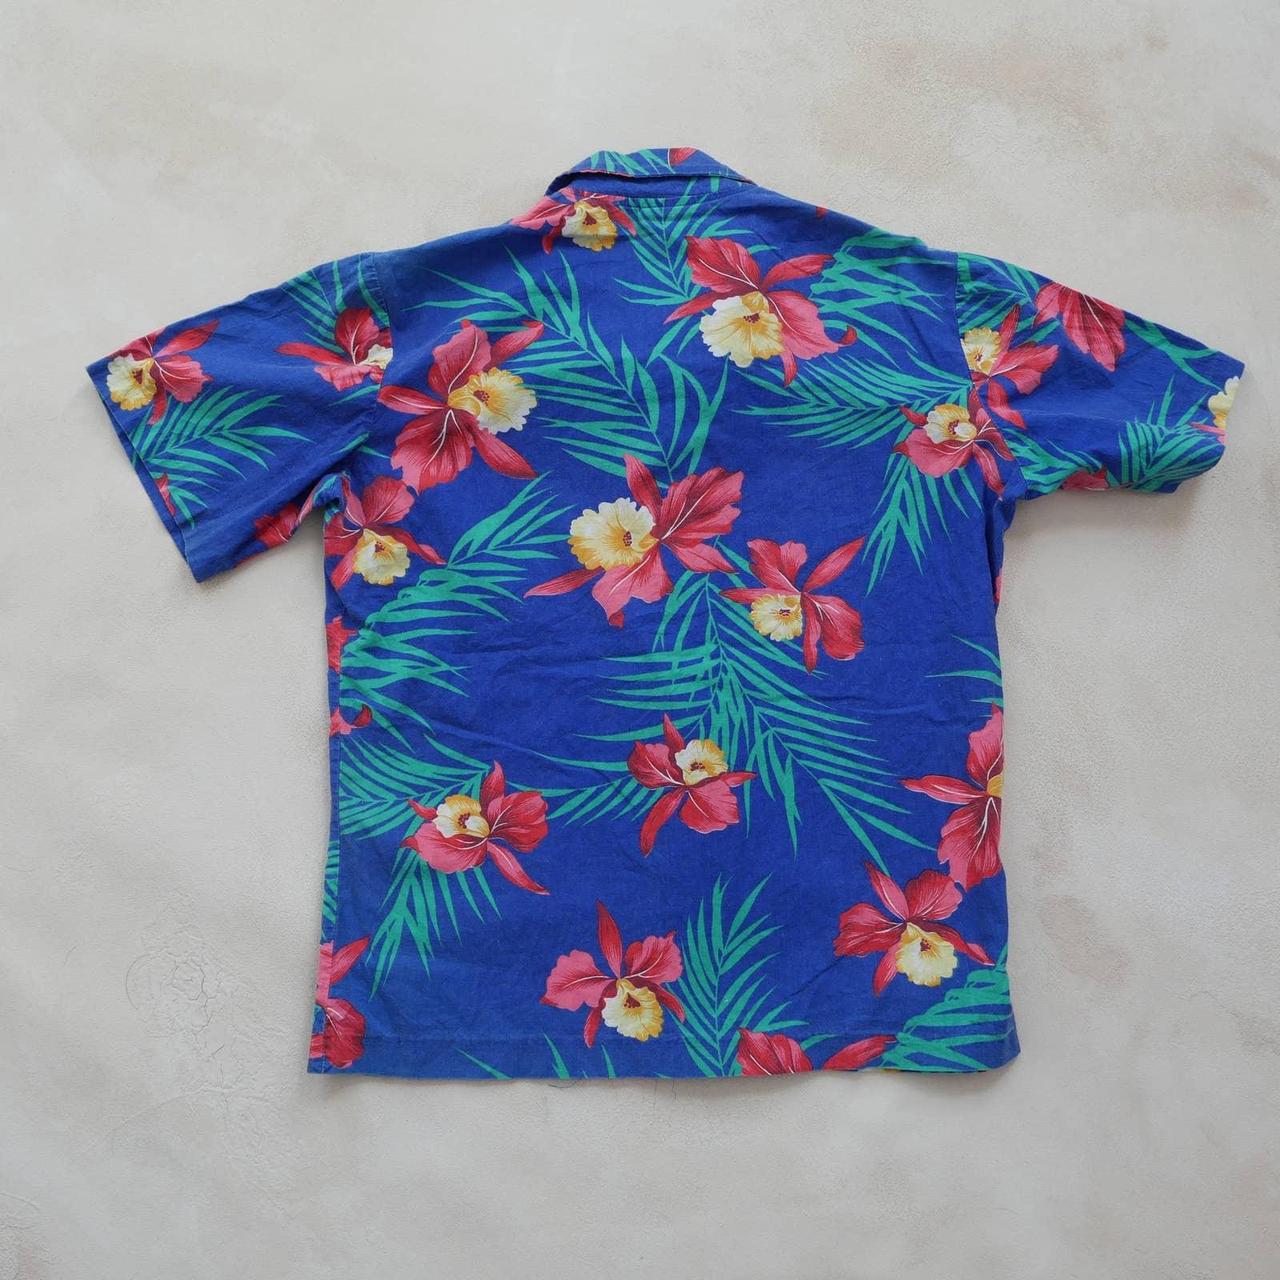 12460円 最新作売れ筋が満載 60s70s Vintage Aloha shirt